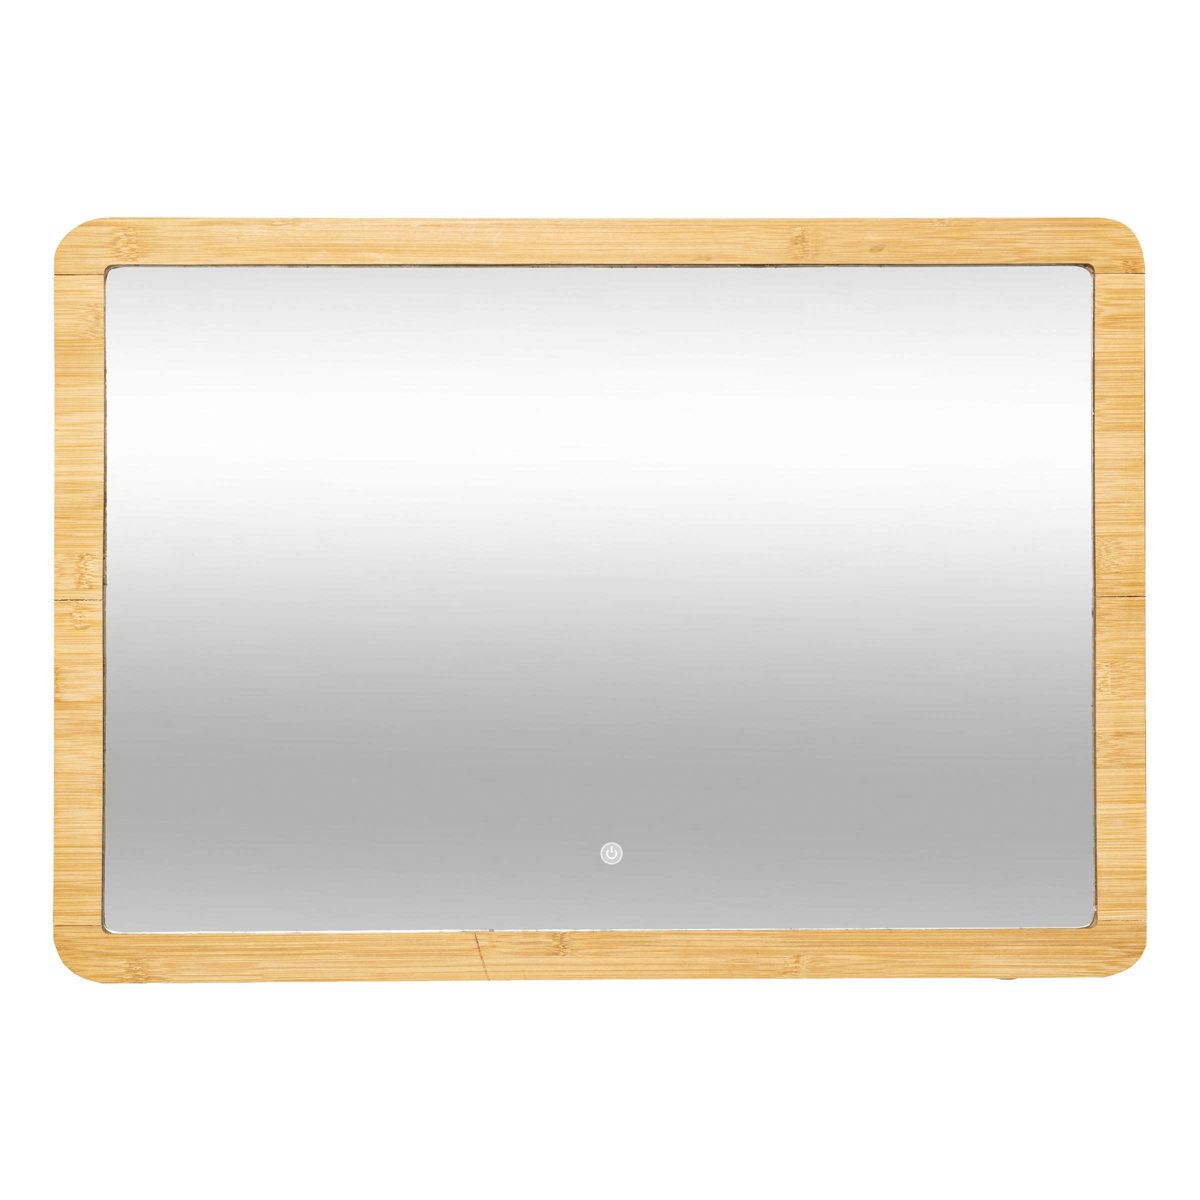 5five Simply Smart Koupelnové zrcadlo s LED podsvícením, bambusový rám, 47 x 66 cm - EMAKO.CZ s.r.o.